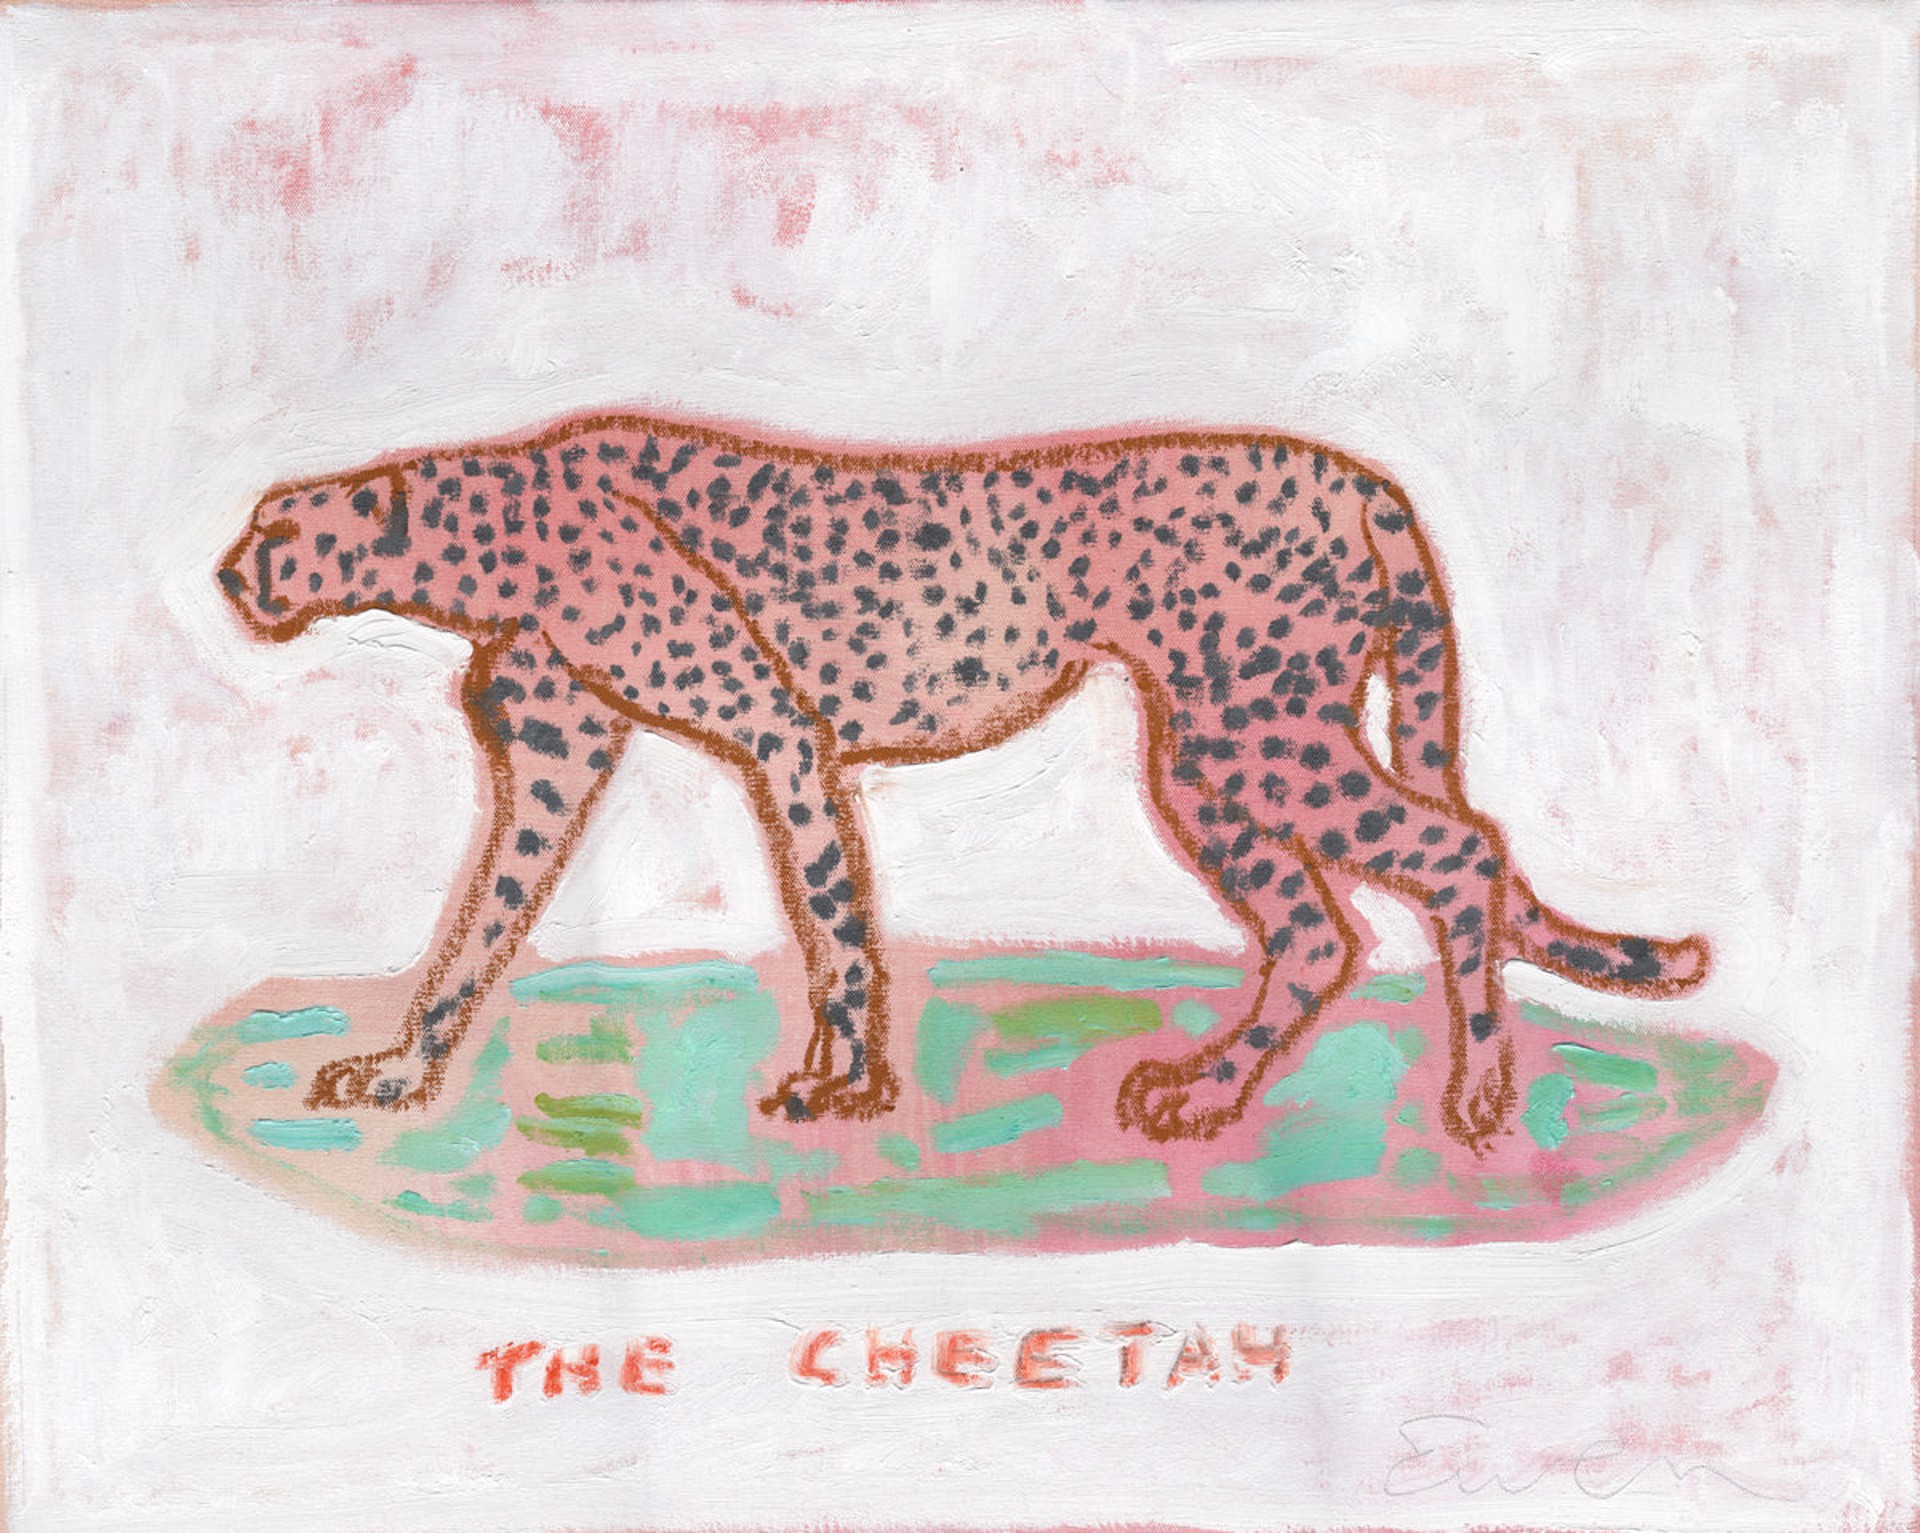 The Cheetah by Anne-Louise Ewen